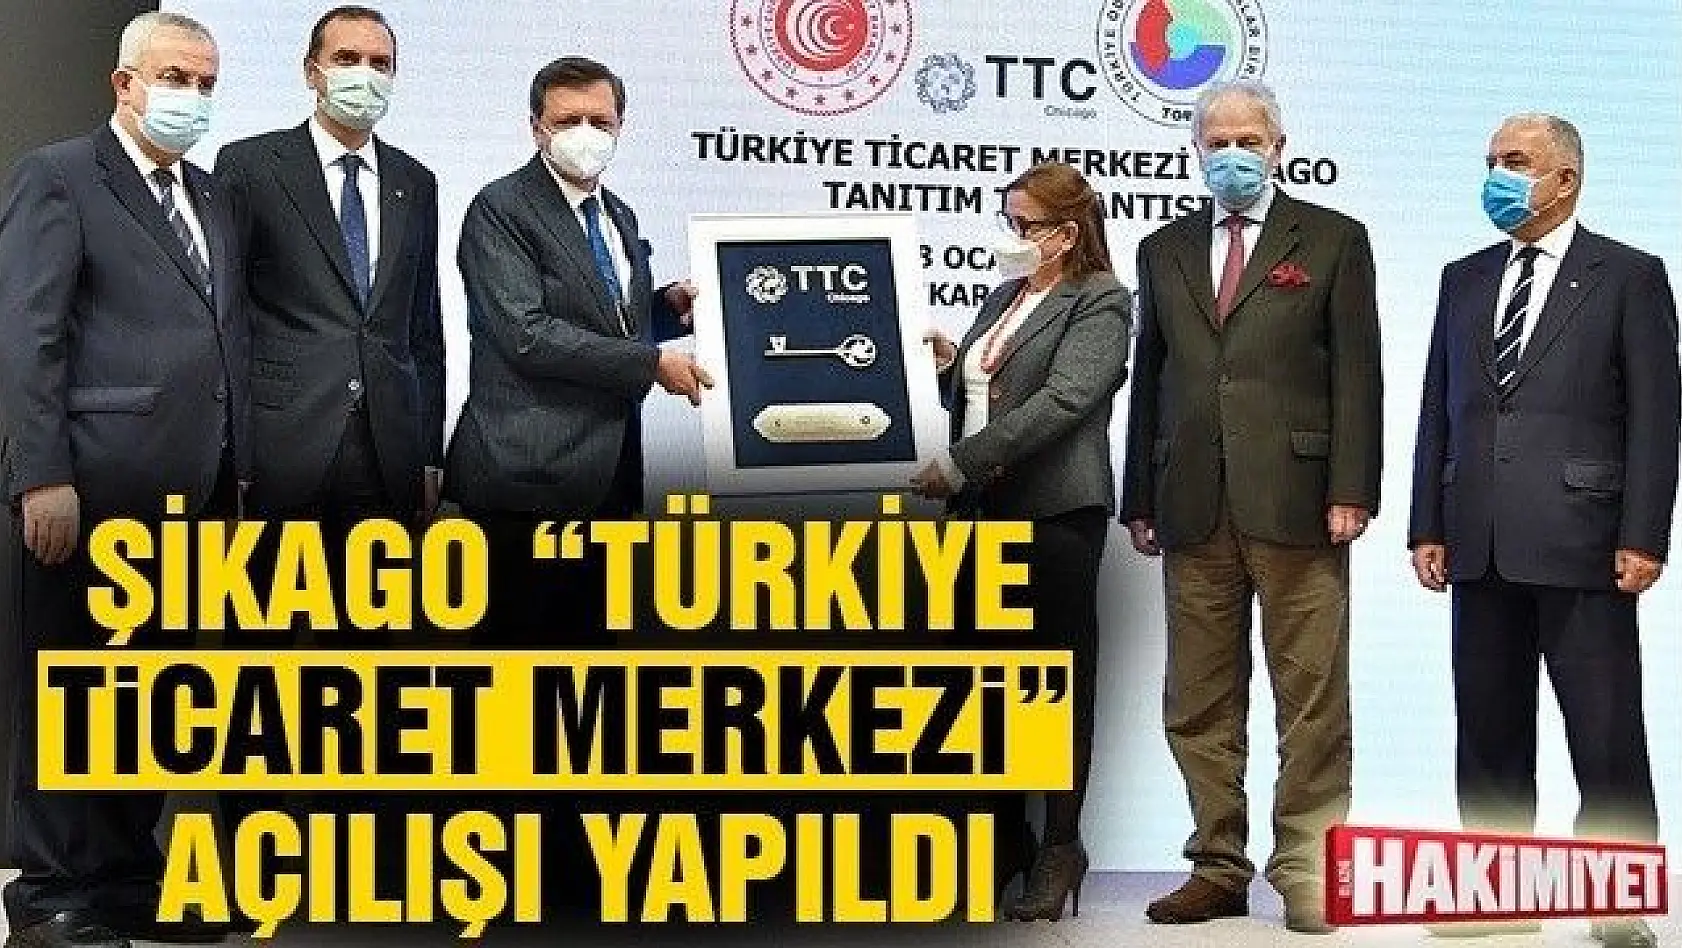 Şikago 'Türkiye Ticaret Merkezi' Açılışı Yapıldı